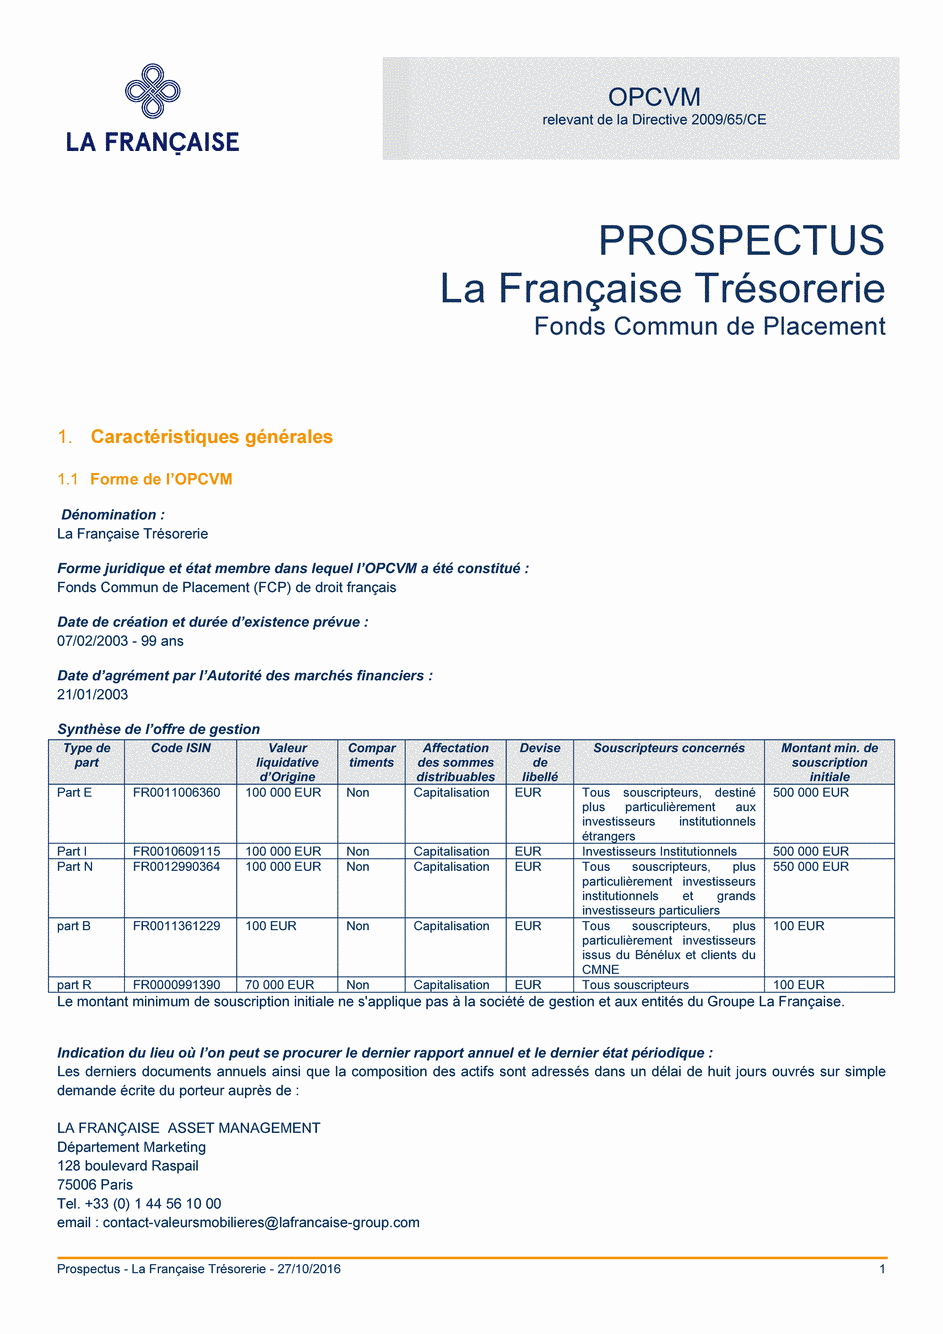 Prospectus La Française Trésorerie - Part I - 27/10/2016 - Français